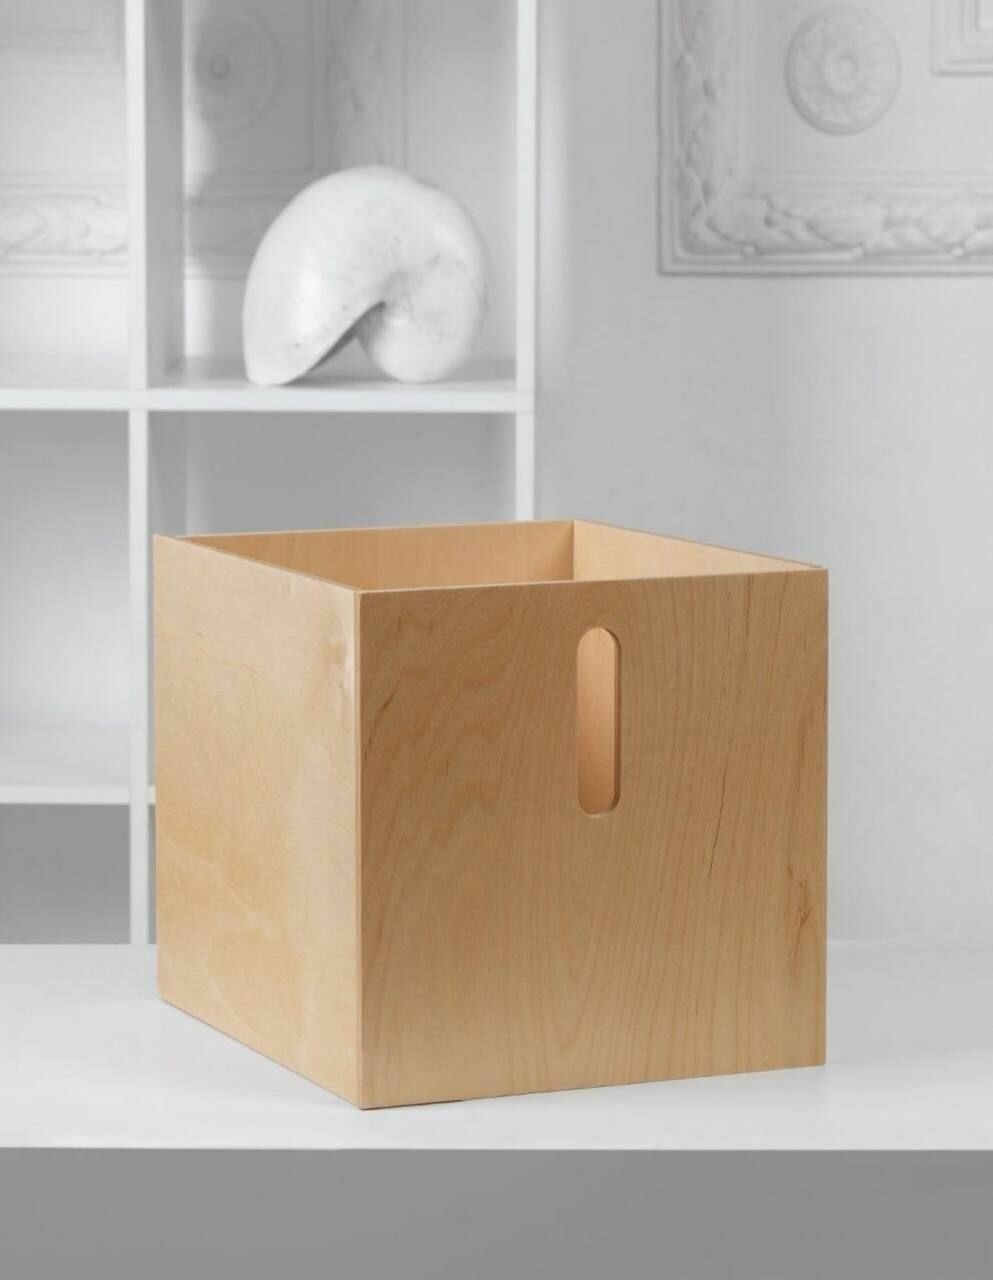 Органайзер коробка ящик нелакированный деревянный для хранения вещей, одежды, обуви, косметики, постельного белья в шкаф